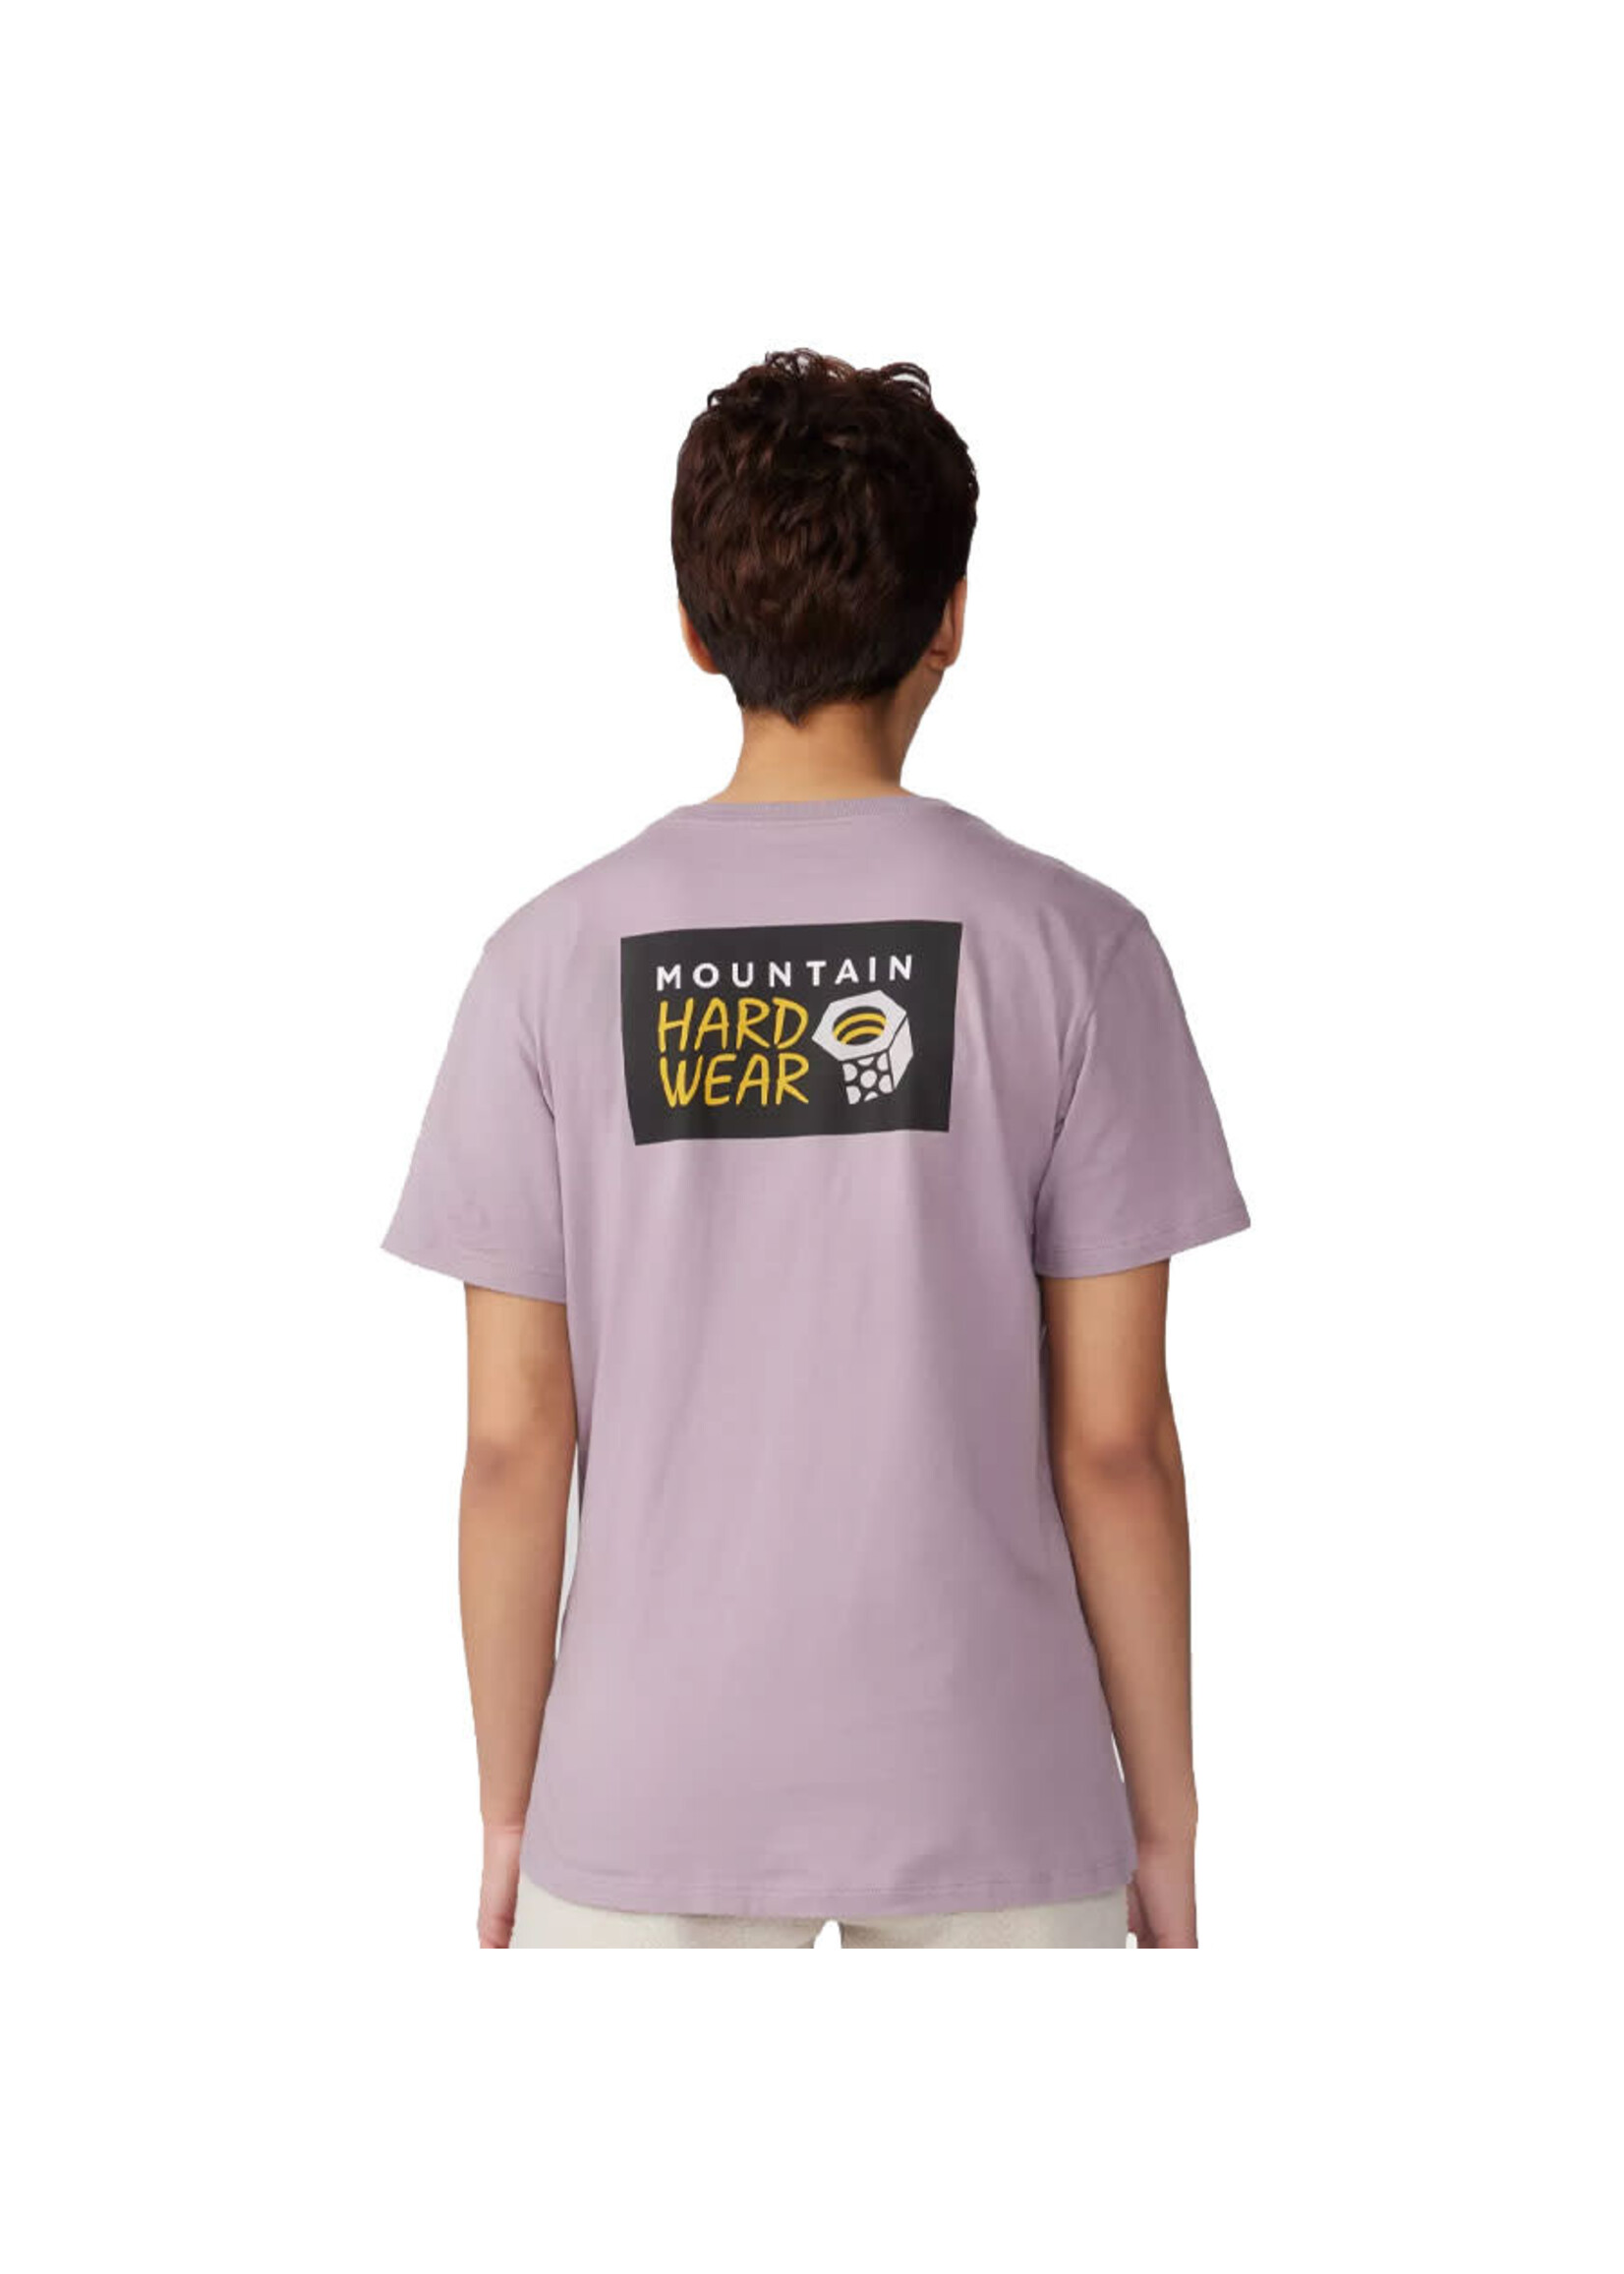 MOUNTAIN HARDWEAR T-shirt MHW LOGO IN A BOX / Mauve Daze